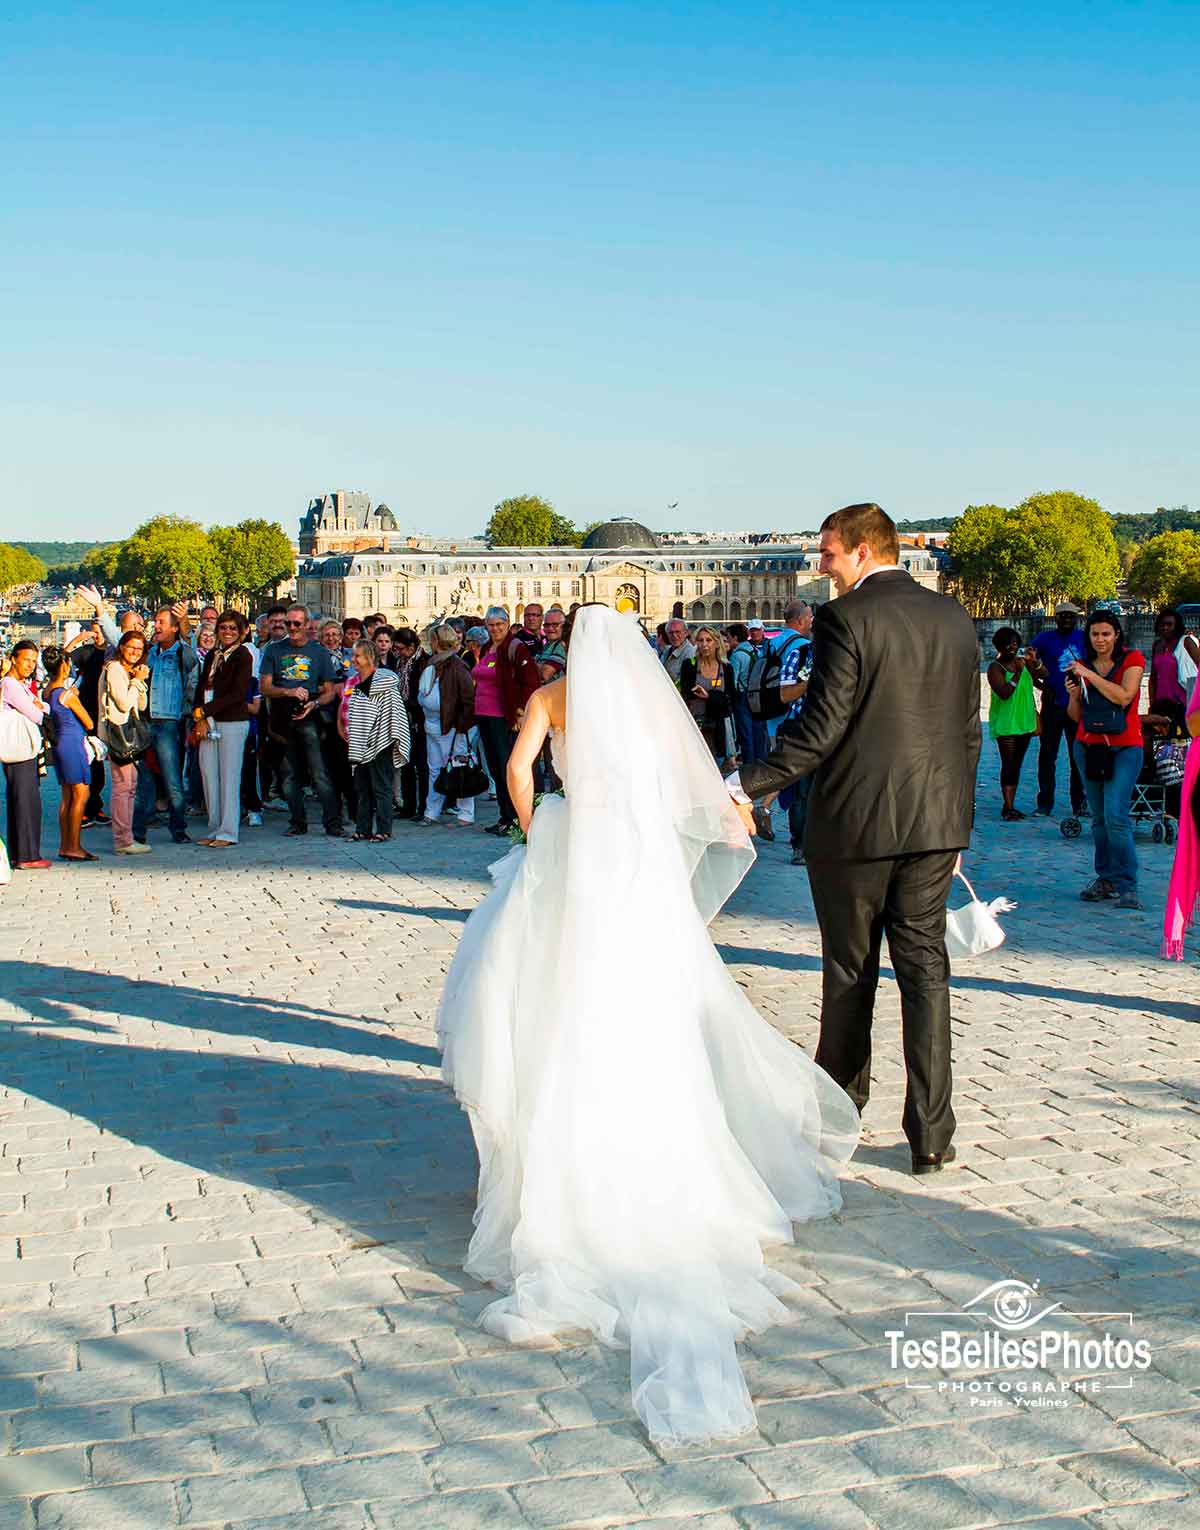 Séance couple photo de mariage à Versailles, photographe mariage Versailles